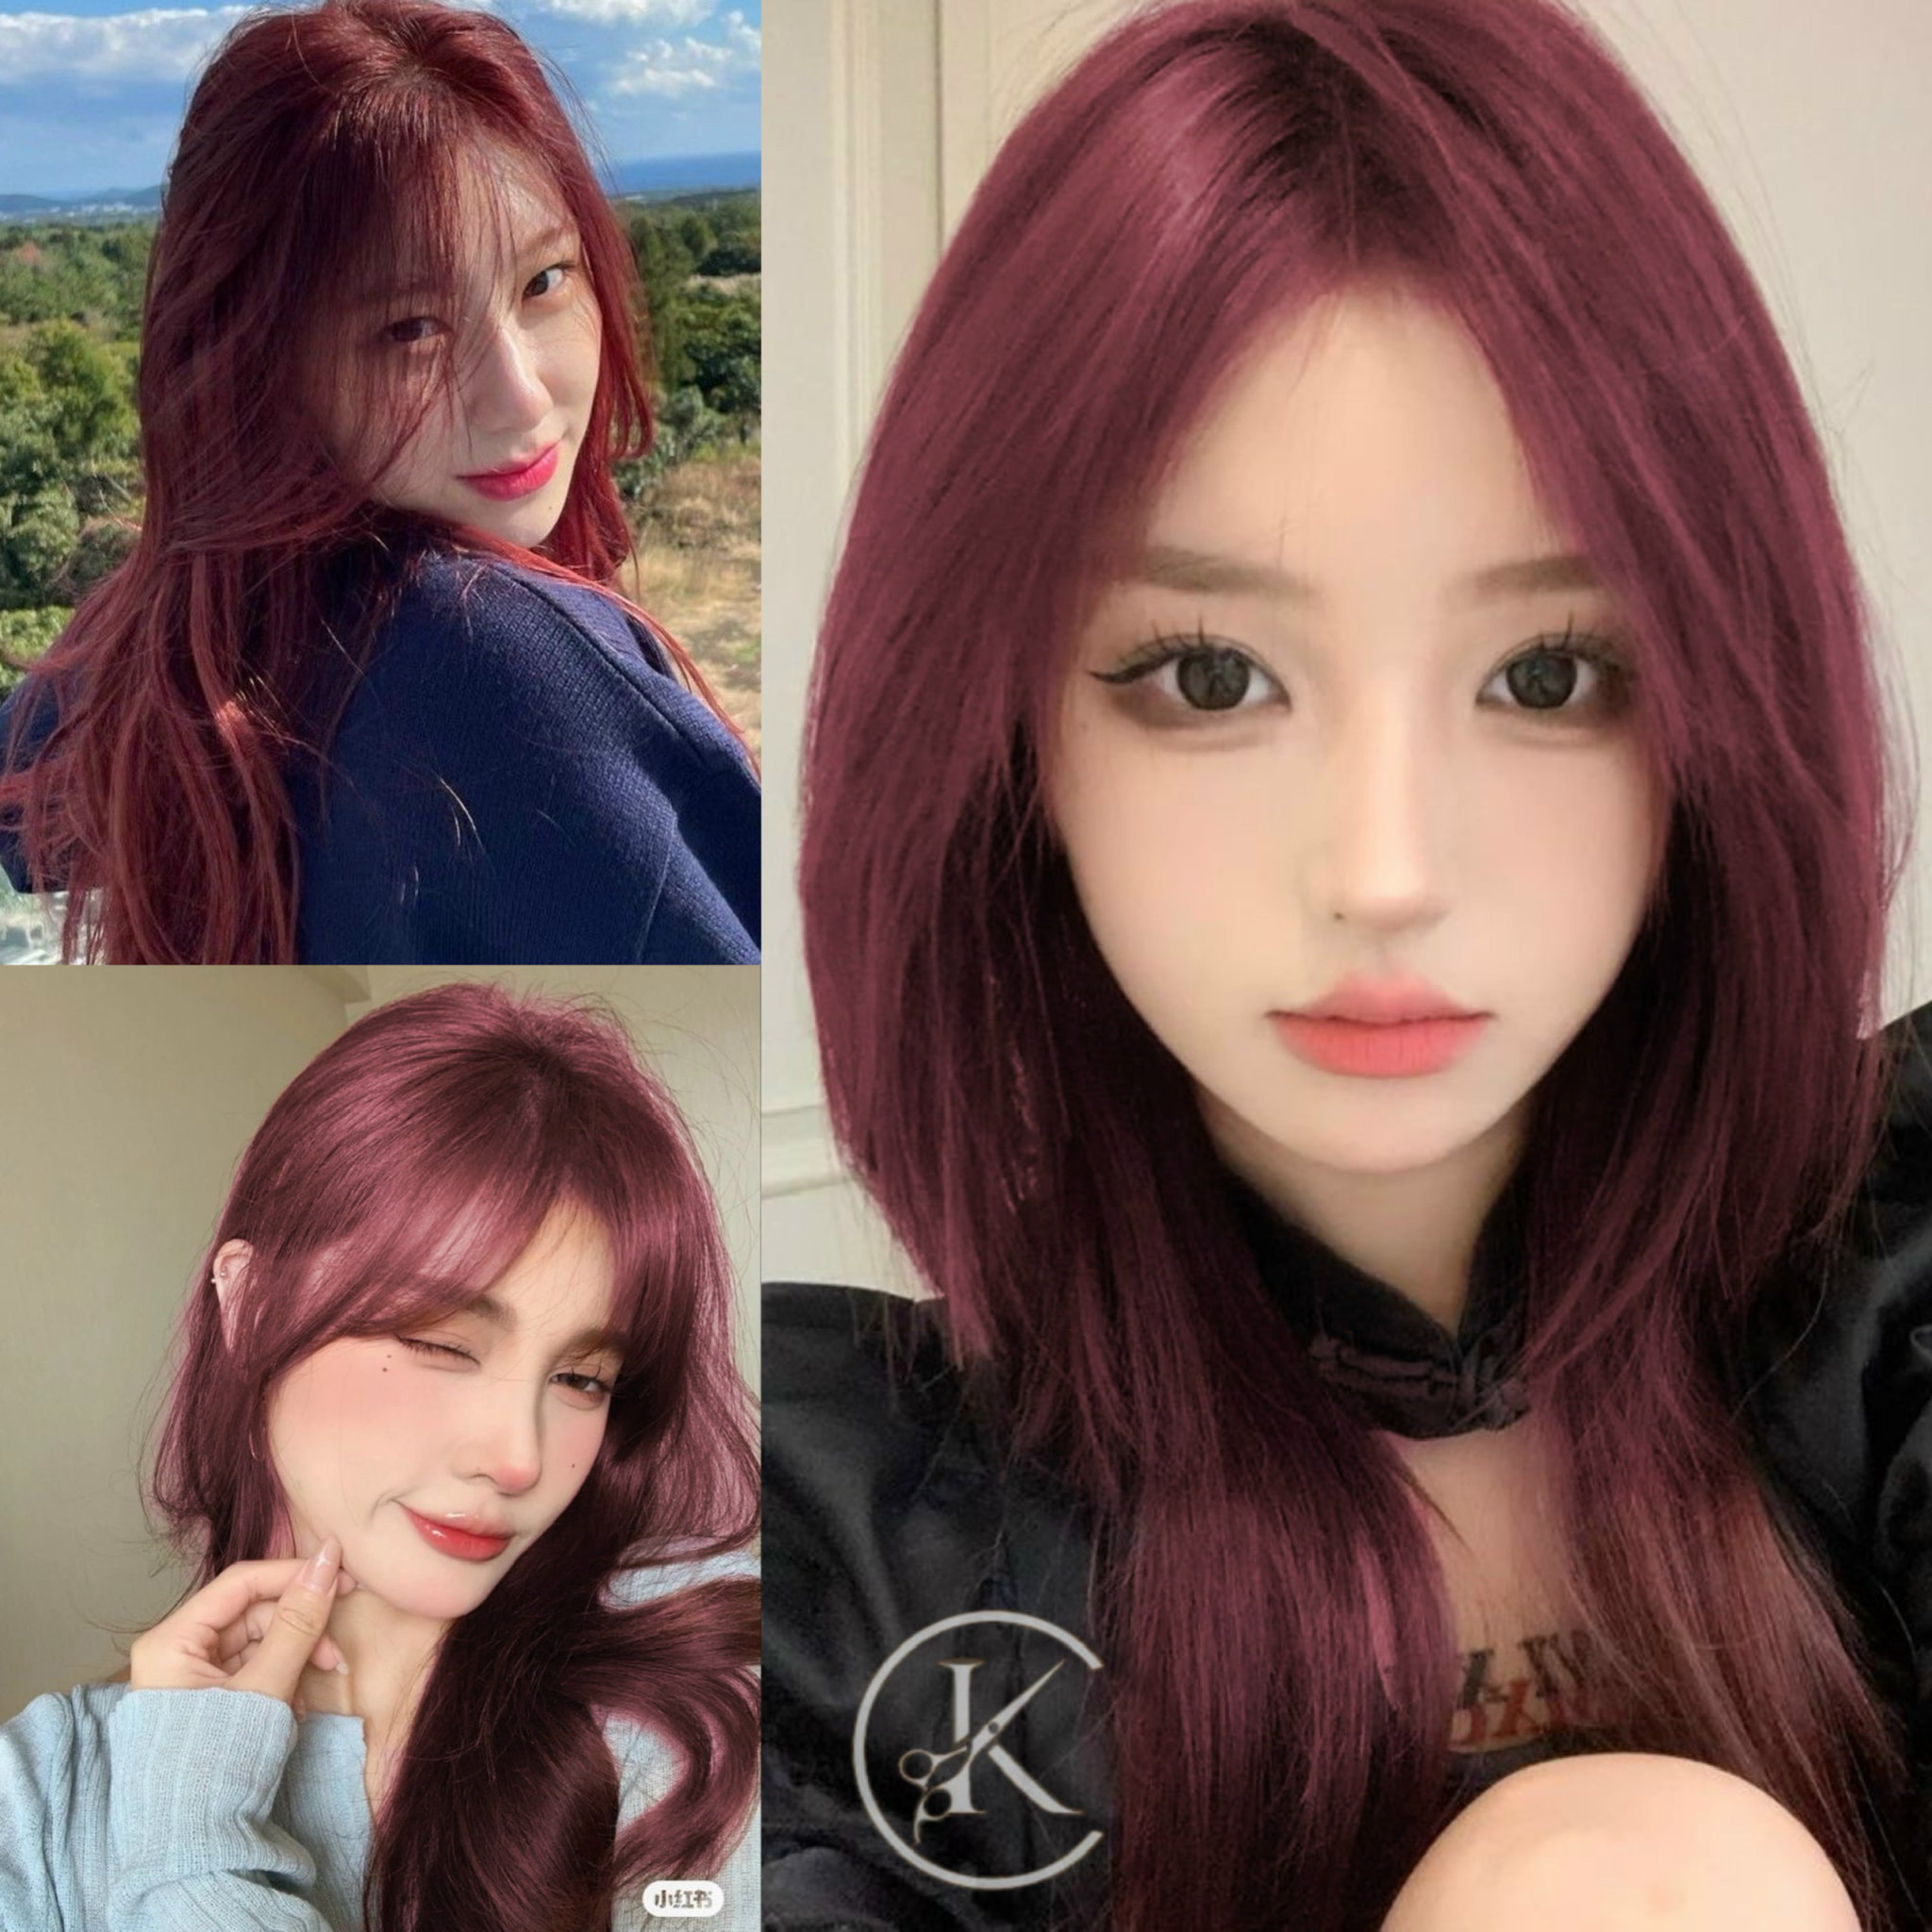 Với nhuộm tóc đỏ đen, bạn sẽ trông thật quyến rũ và cá tính. Hãy để chúng tôi giới thiệu cho bạn những hình ảnh đẹp để tăng cường thêm sự quyến rũ của bạn.